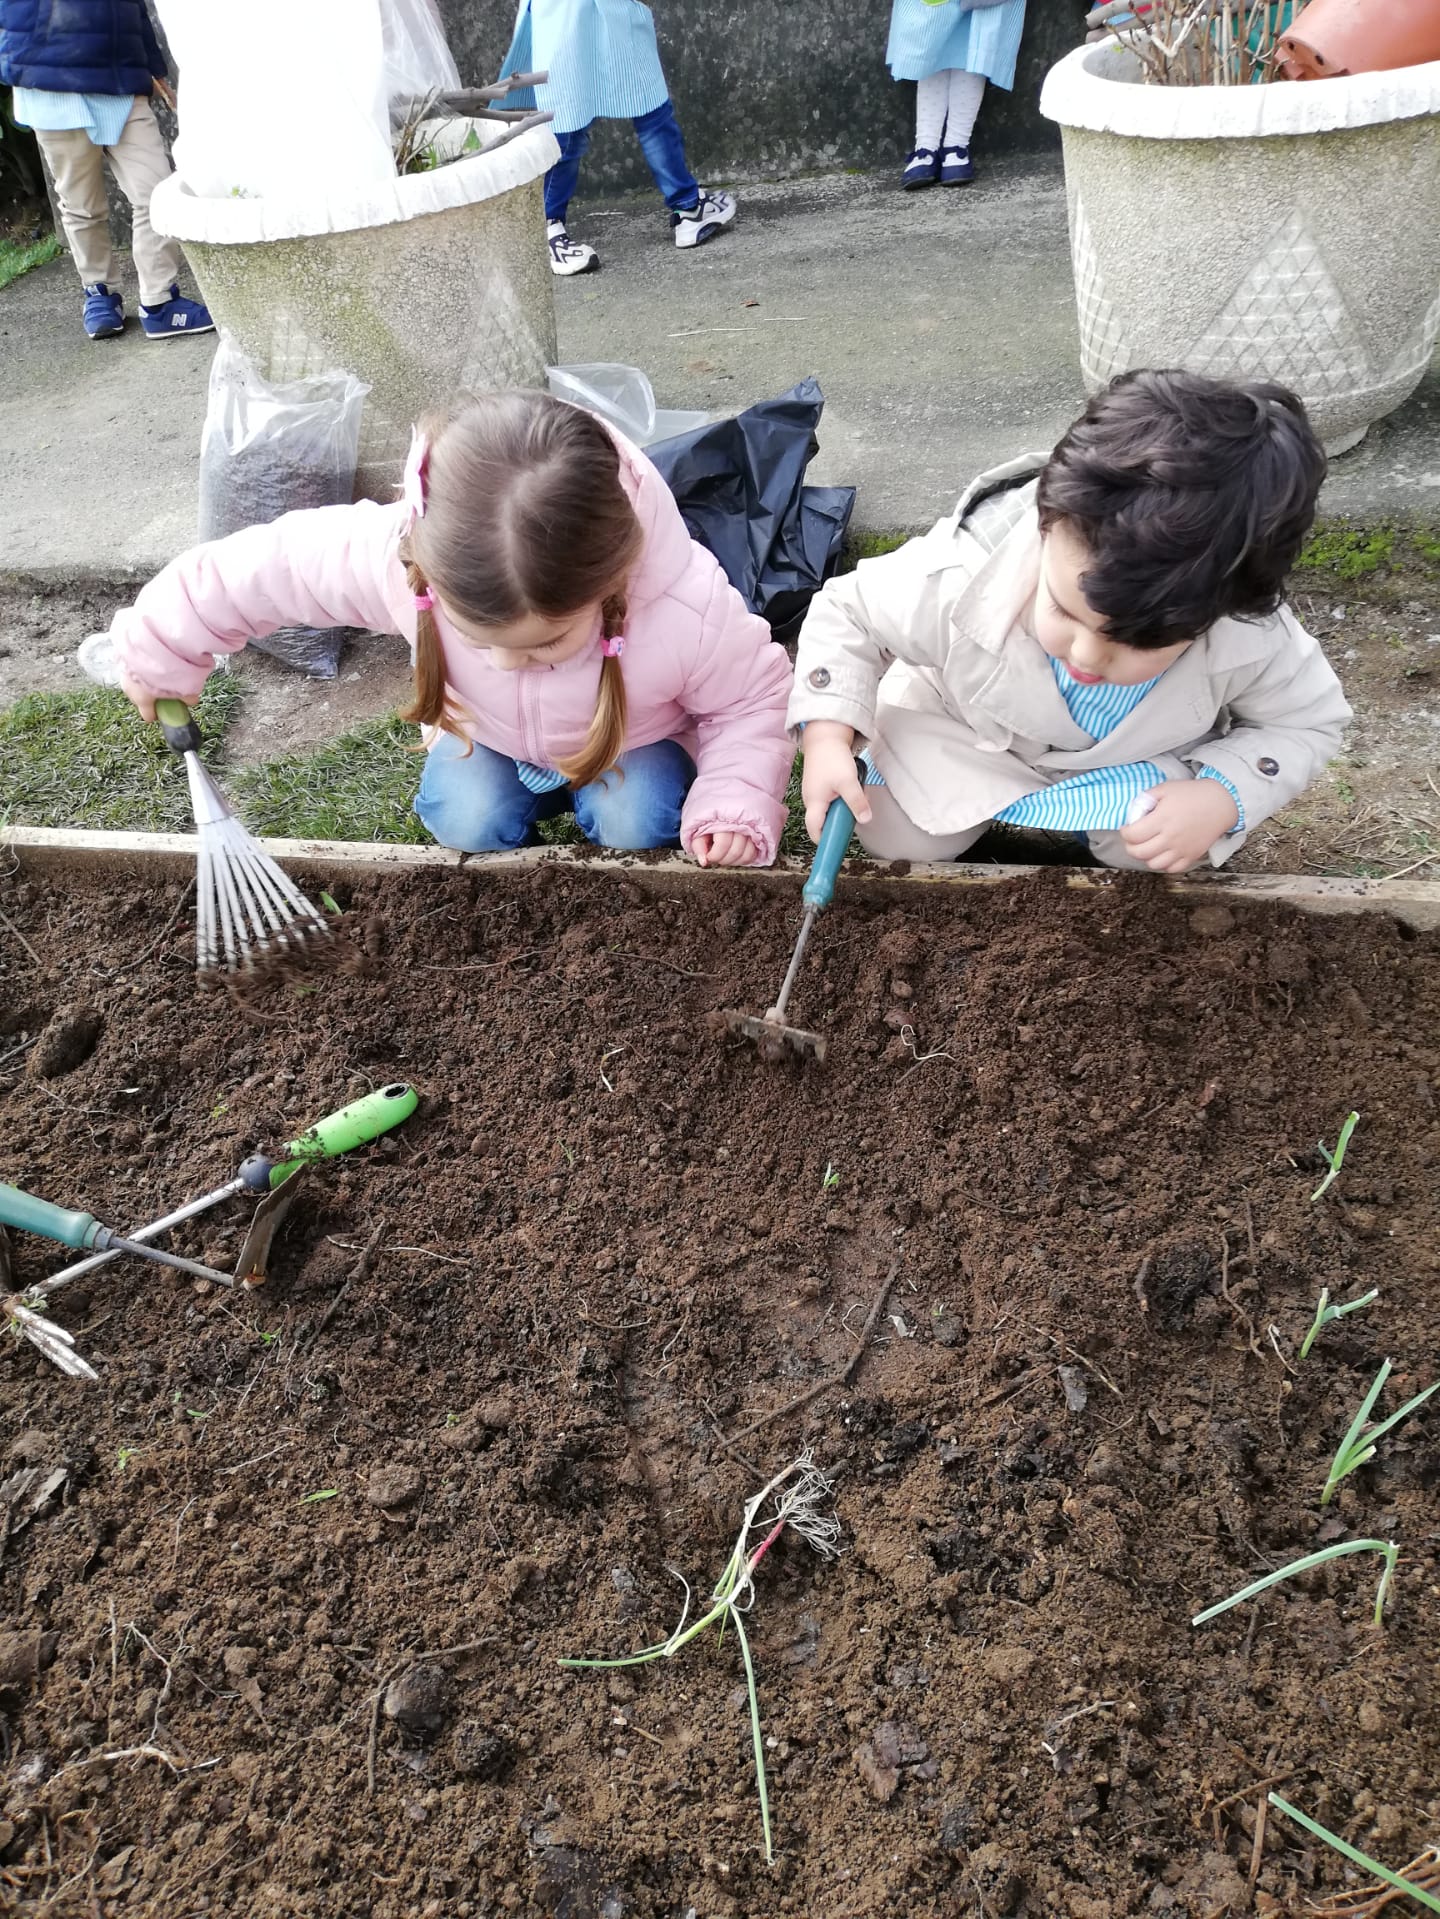 As crianças preparam a terra para receberam as plantas.